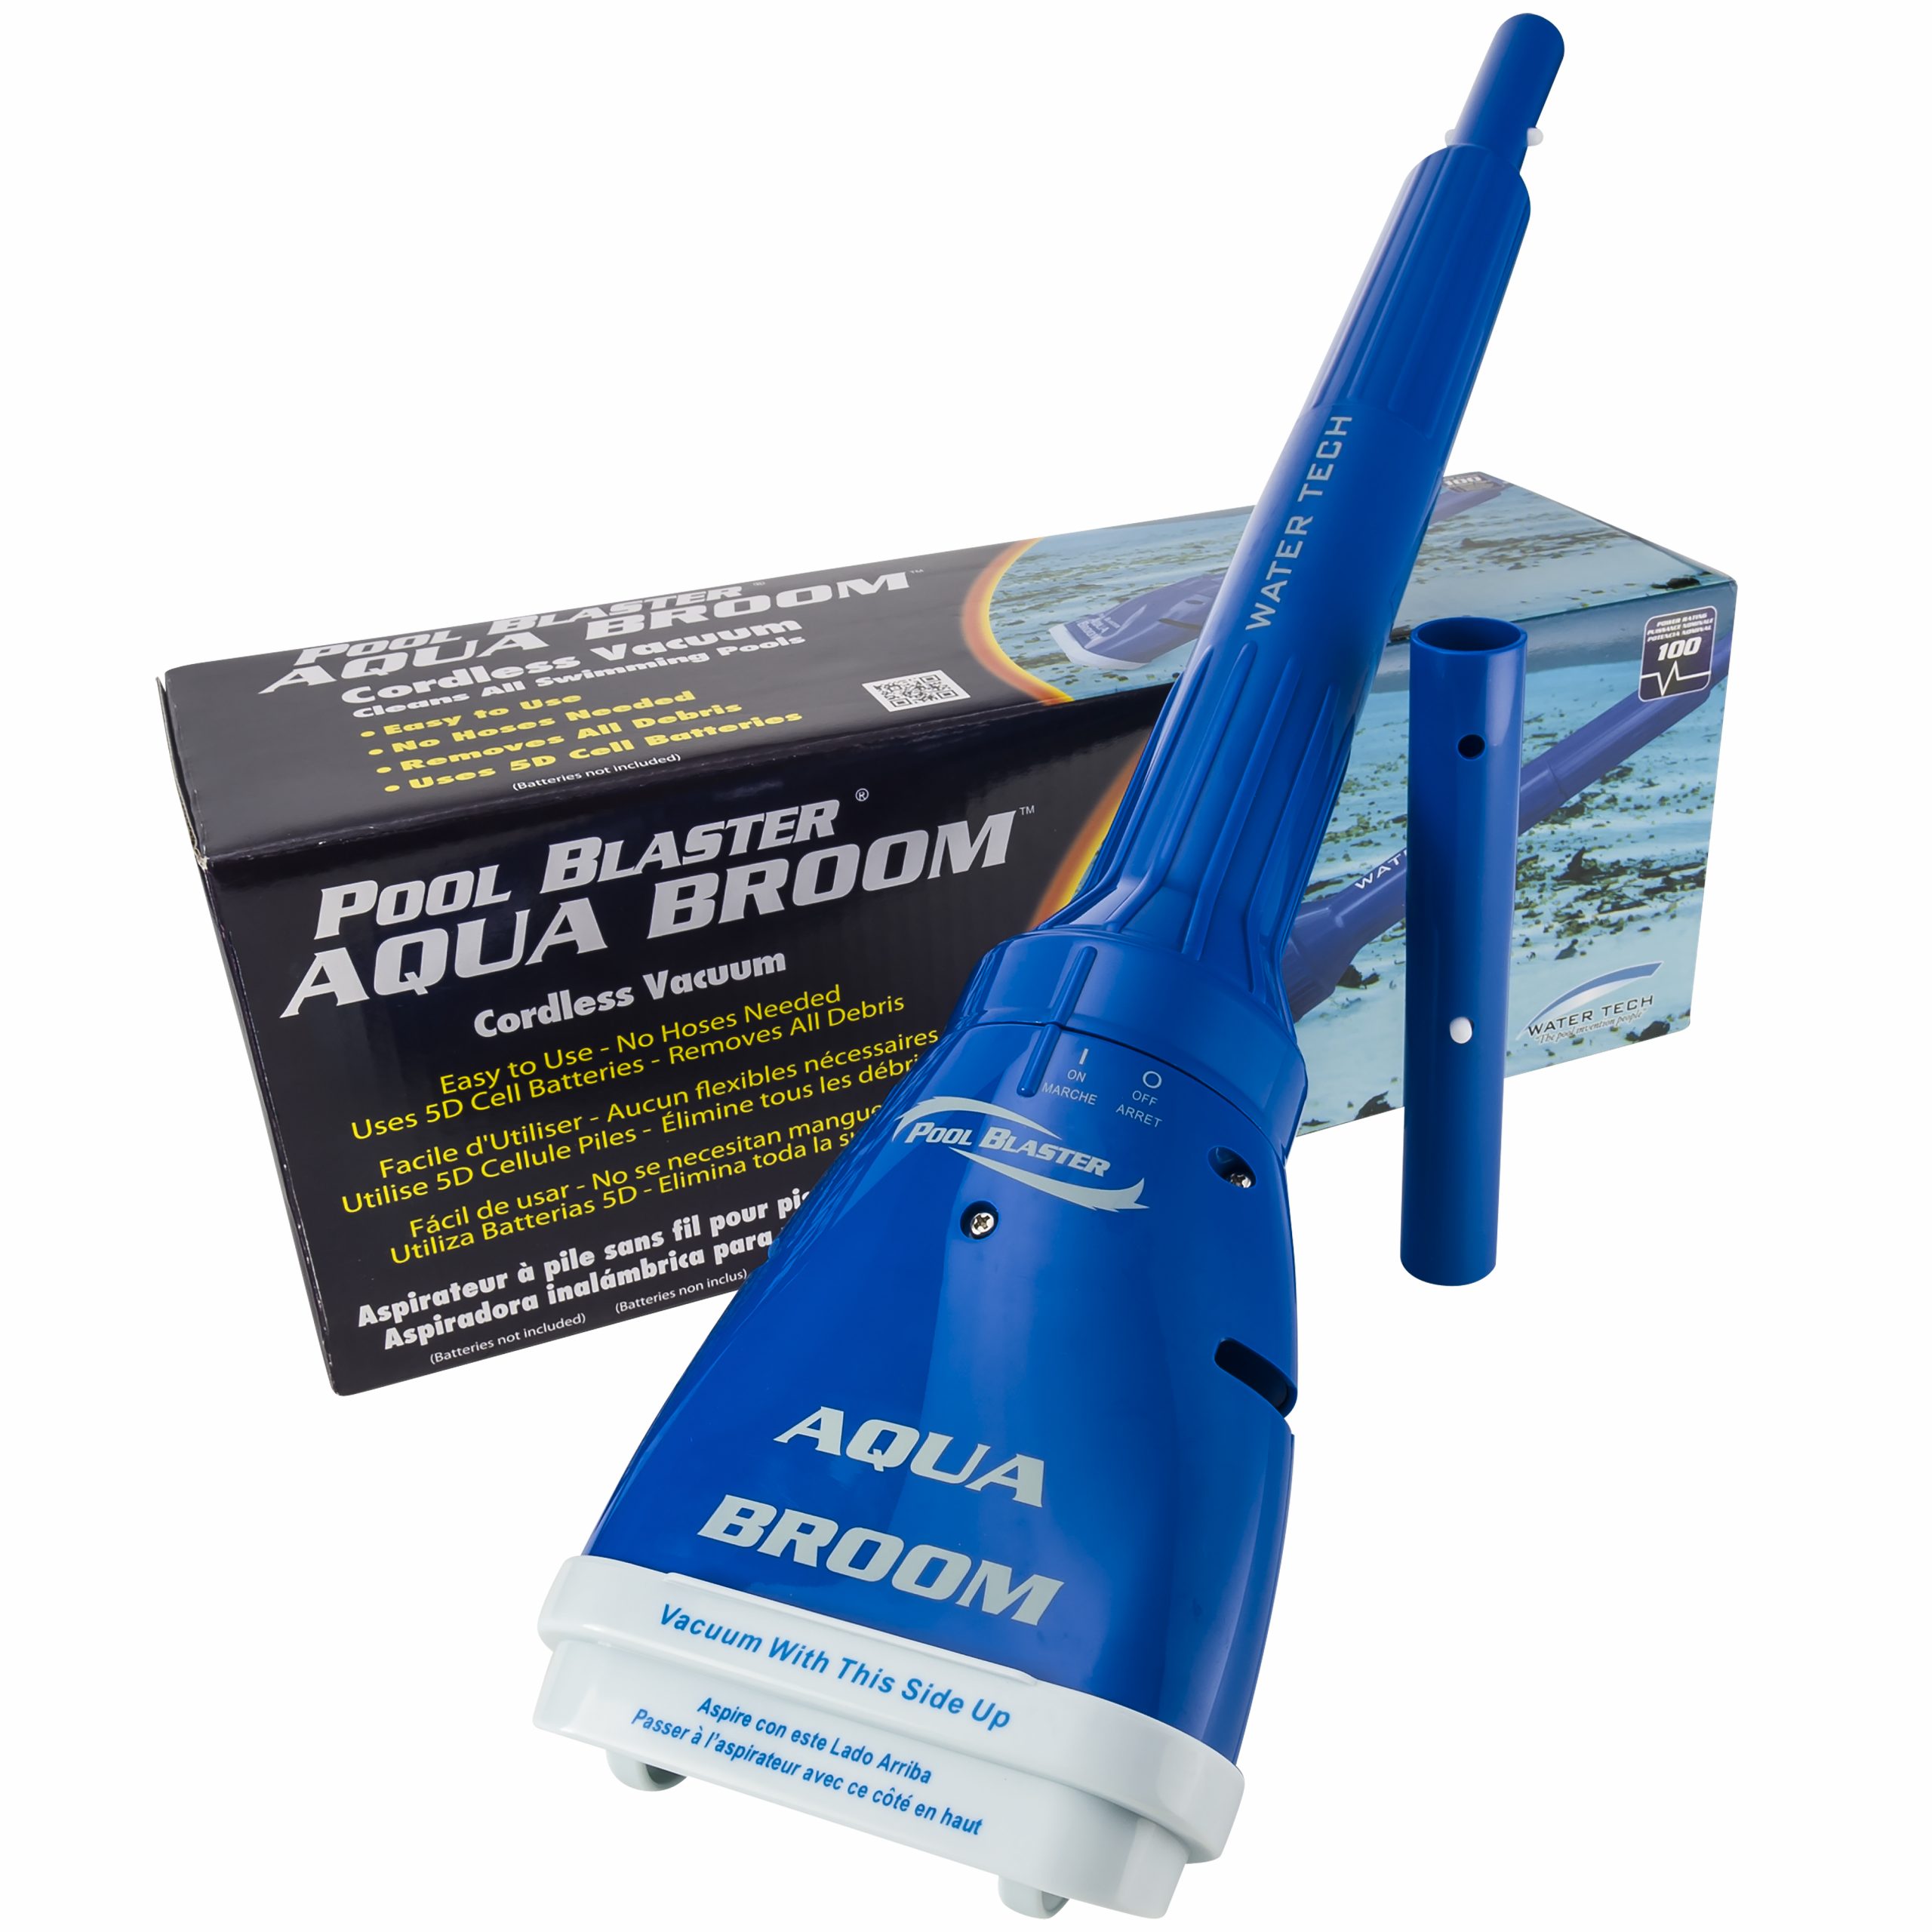 Aspirateur Aqua Broom À Pile Pour Piscine Hors Sol encequiconcerne Aspirateur Piscine Batterie